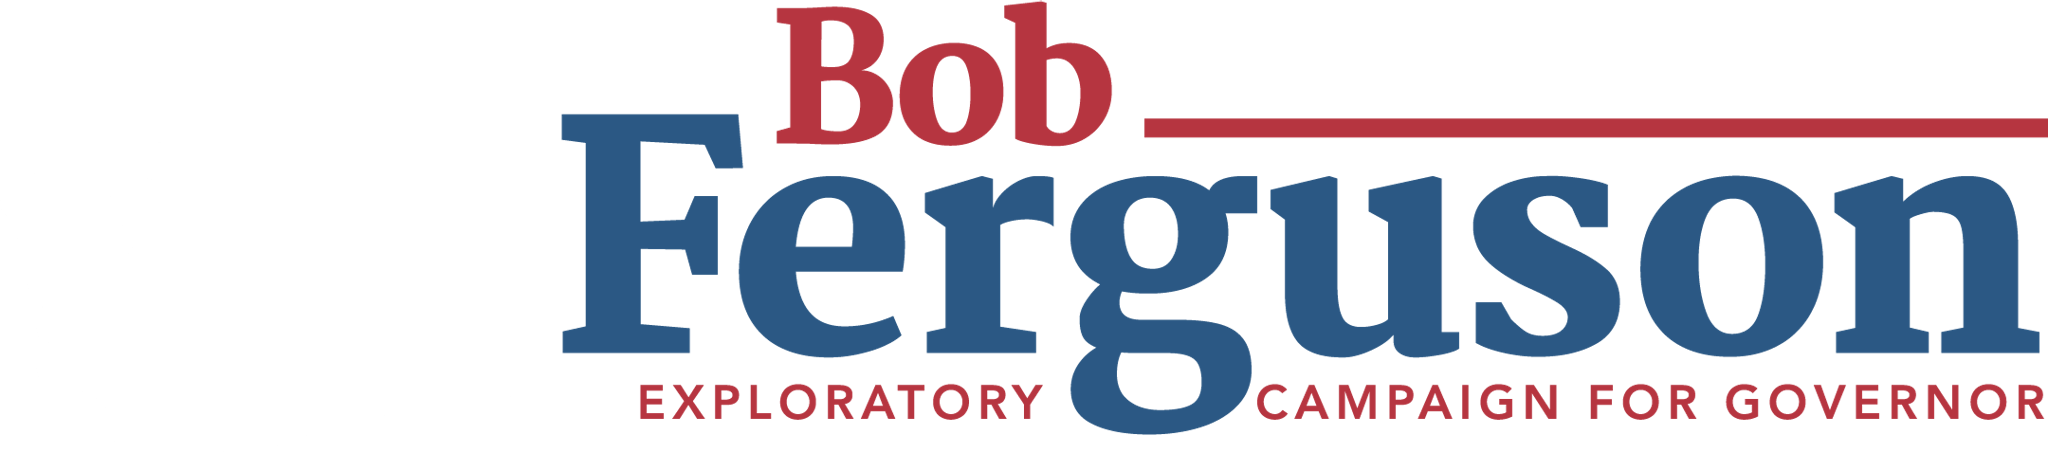 Bob Ferguson for Governor logo